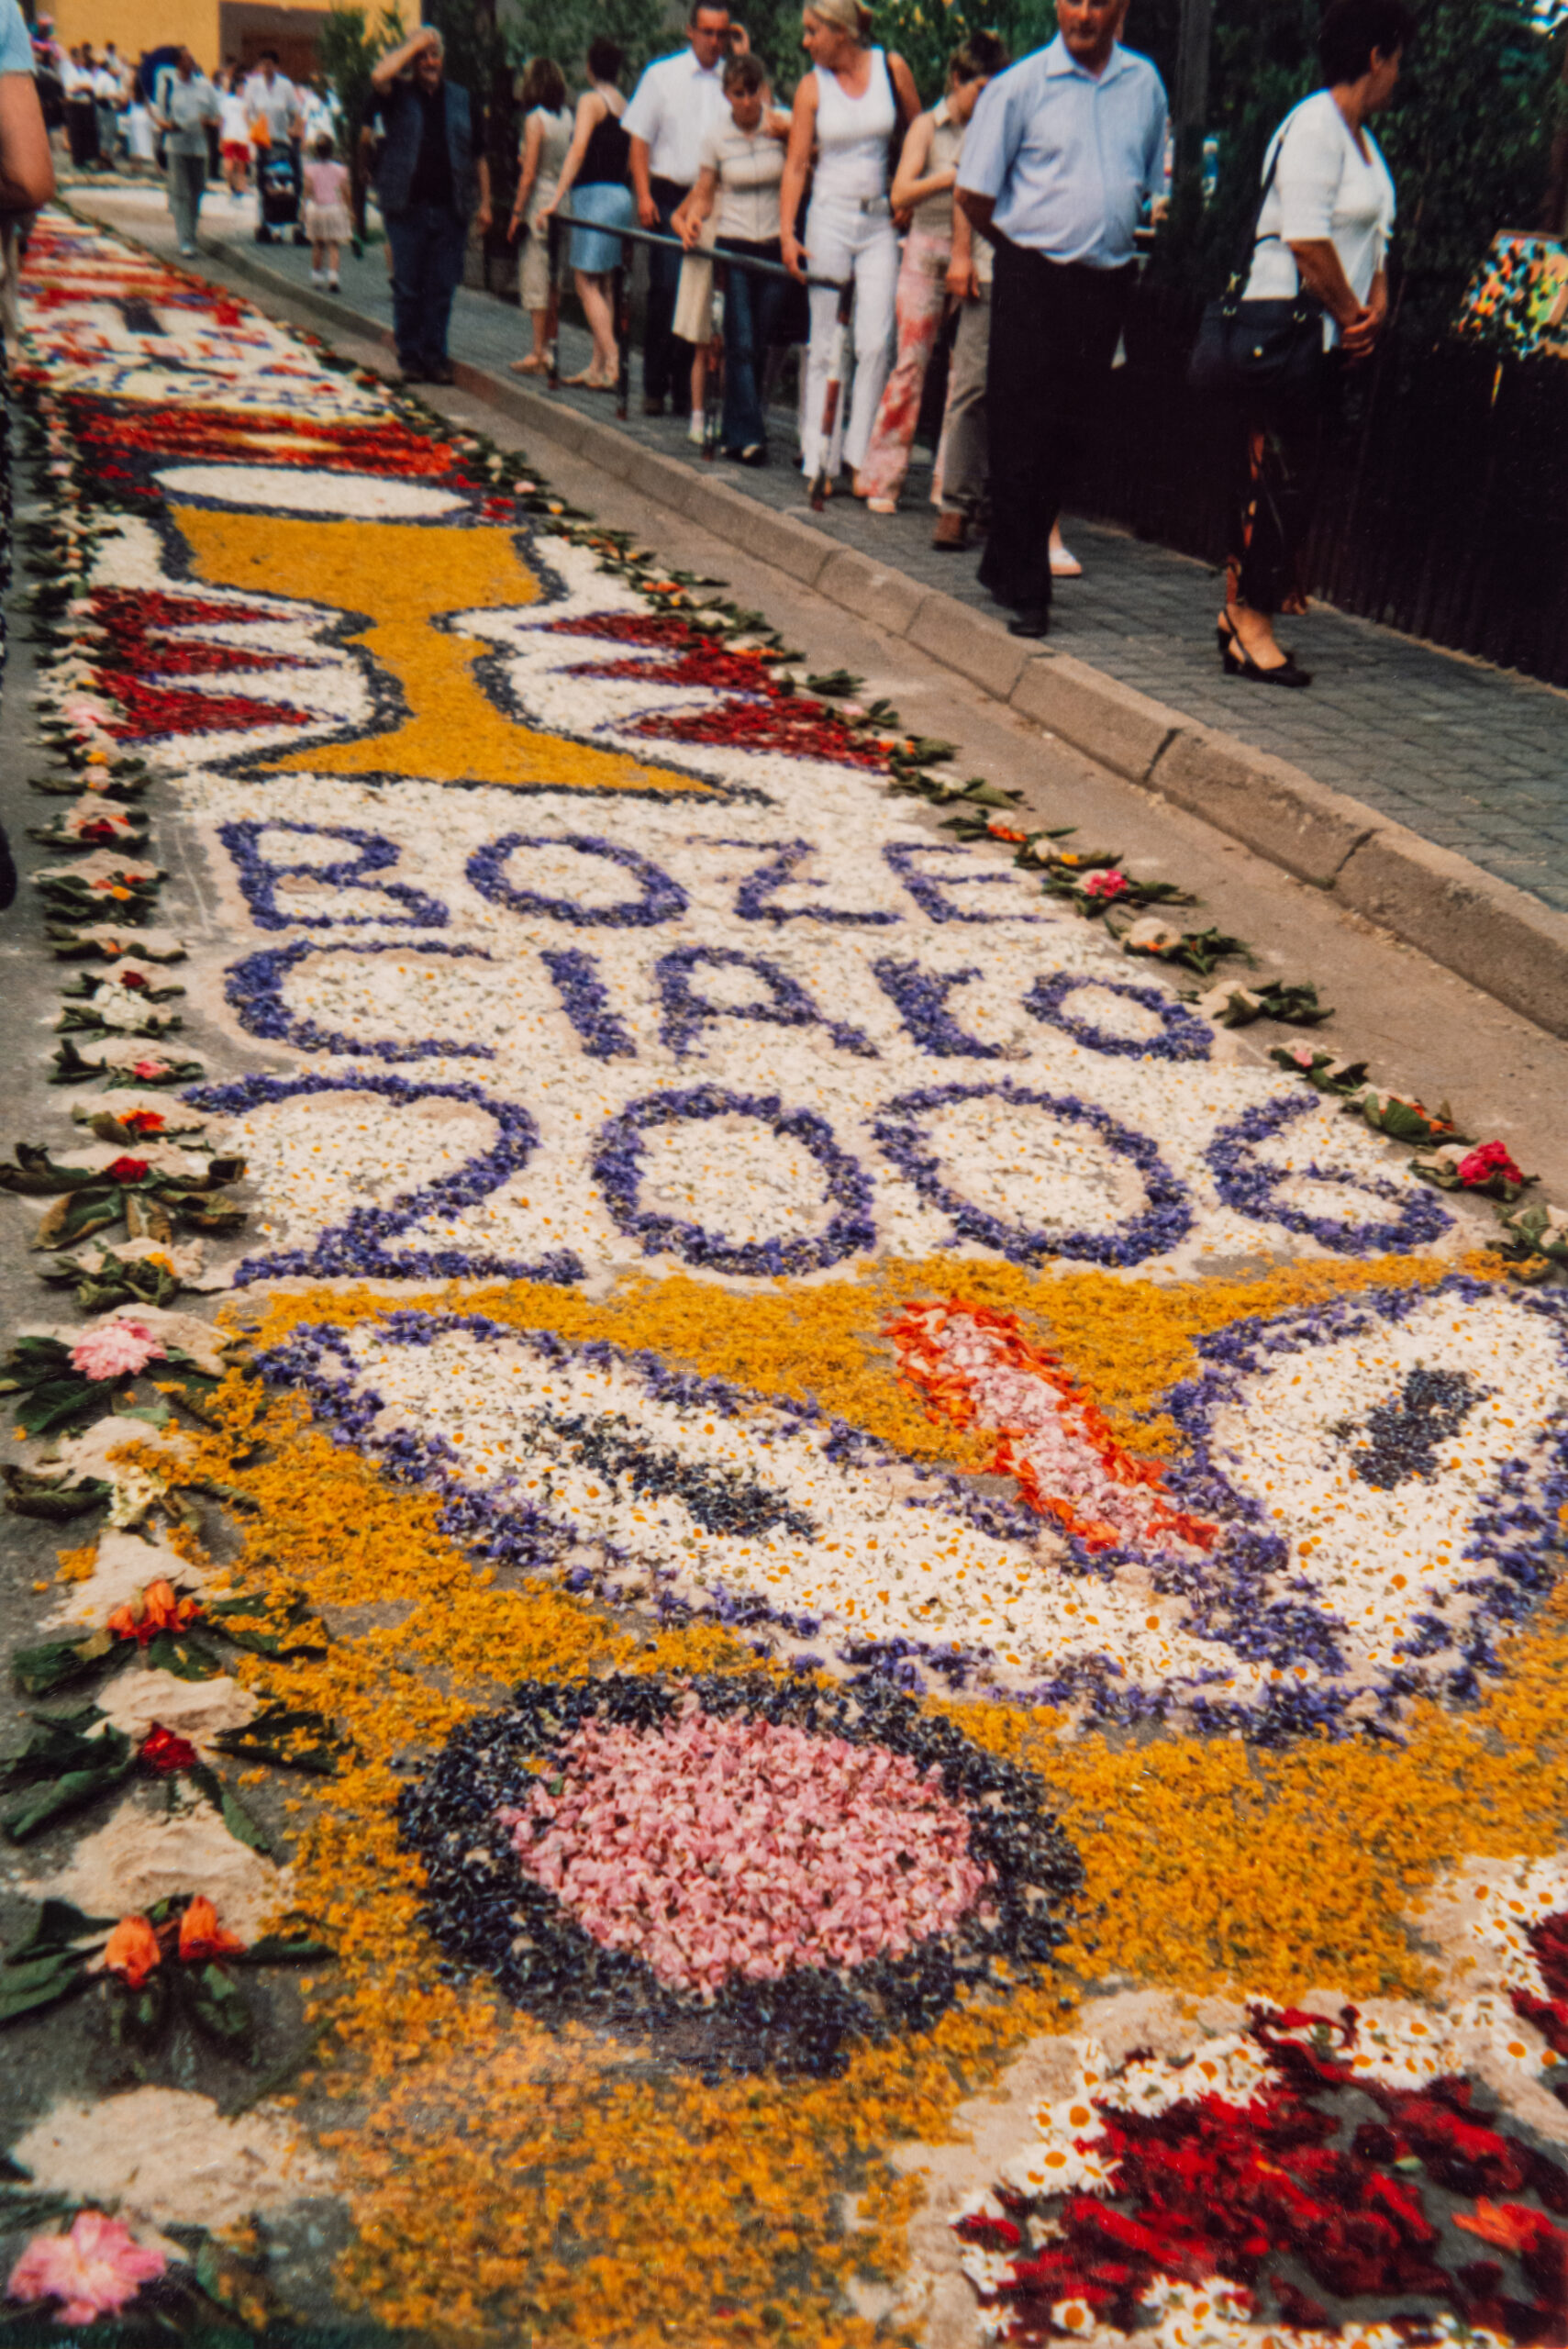 Wielokolorowy dywan kwiatowy złożony z żółtych, białych, czerwonych i fioletowych kwiatów. dywan przedstawia motywy roślinne oraz kielich. W centrum napis 